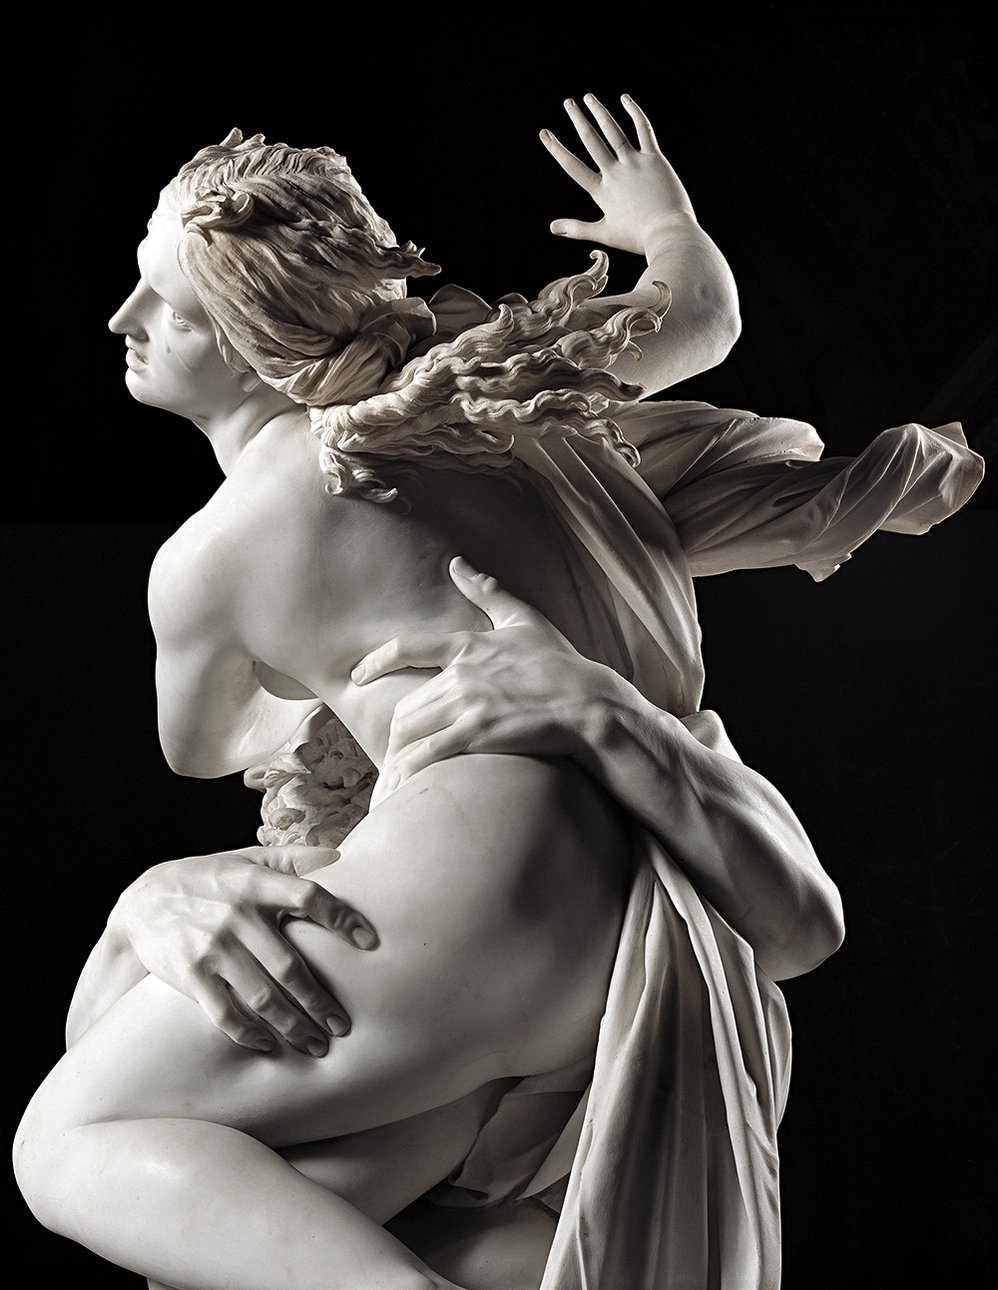 Лоренцо Бернини. «Похищение Прозерпины». 1622. Фрагмент. Фото: Galleria Borghese